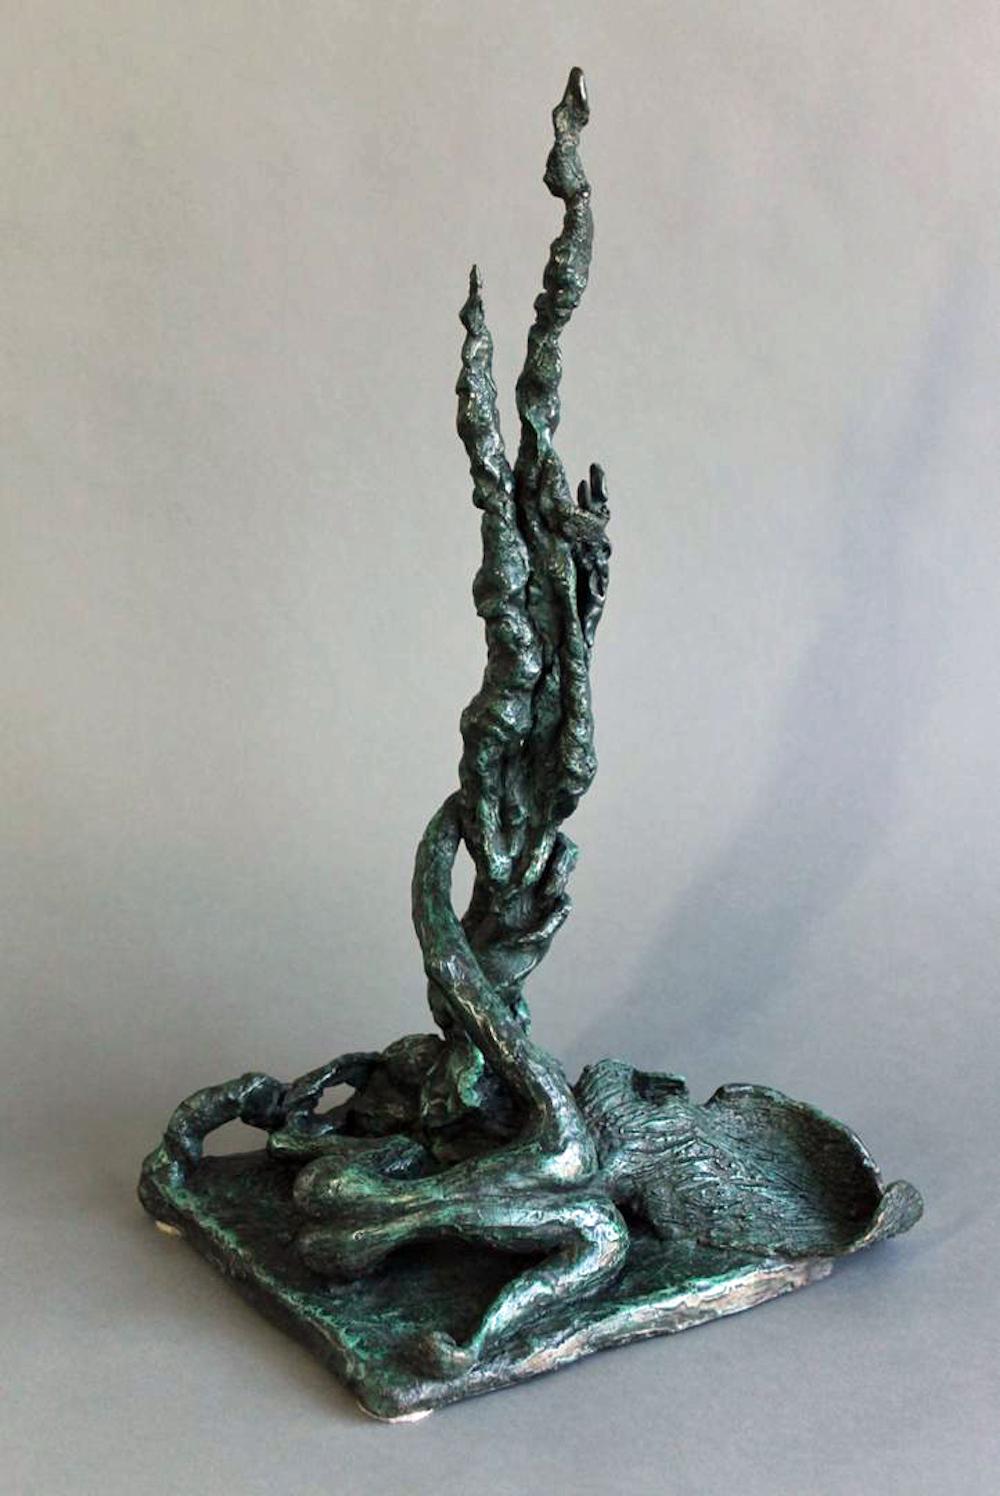 Sculpture en bronze organique et abstraite de Yulla Lipchitz représentant une femme allongée avec un arbre. 

À propos de l'artiste : Yulla Lipchitz, née Halberstadt, est née le 21 avril 1911 à Berlin, en Allemagne. Alors qu'elle grandit dans une